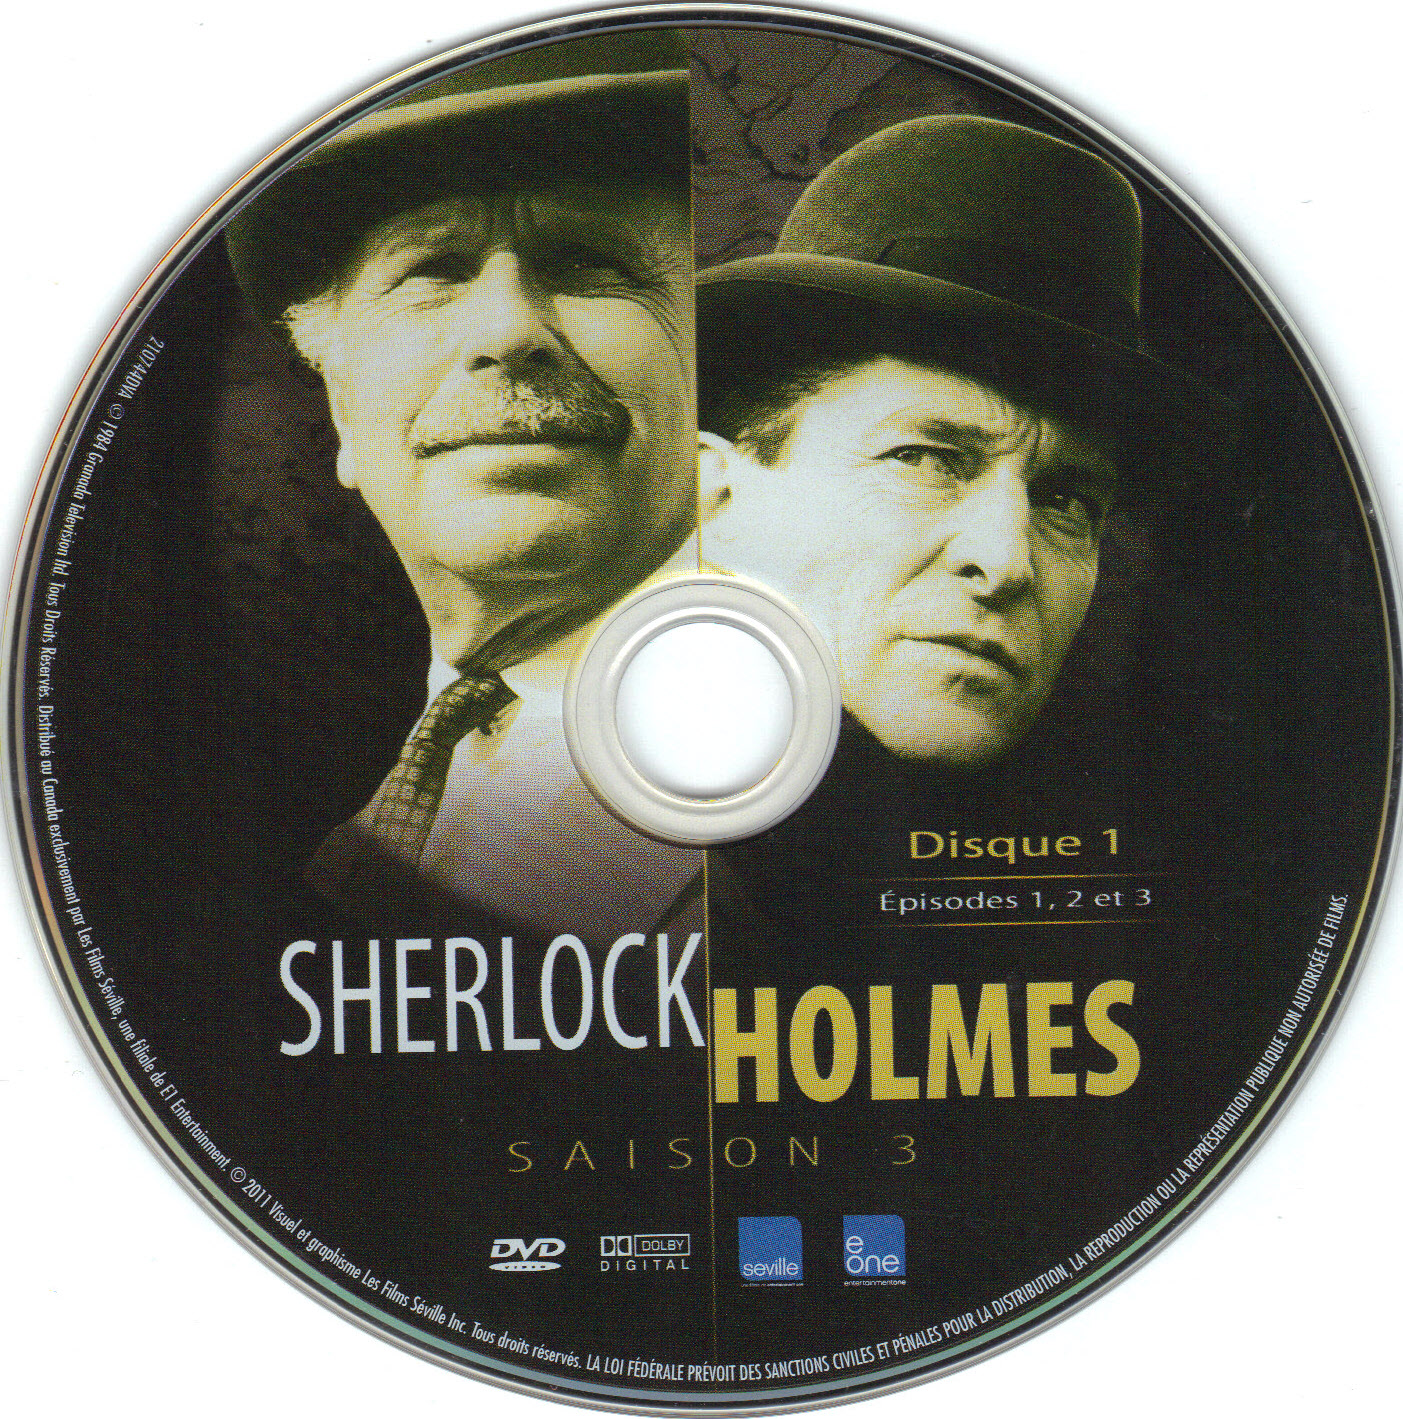 Sherlock Holmes Saison 3 Disc 1